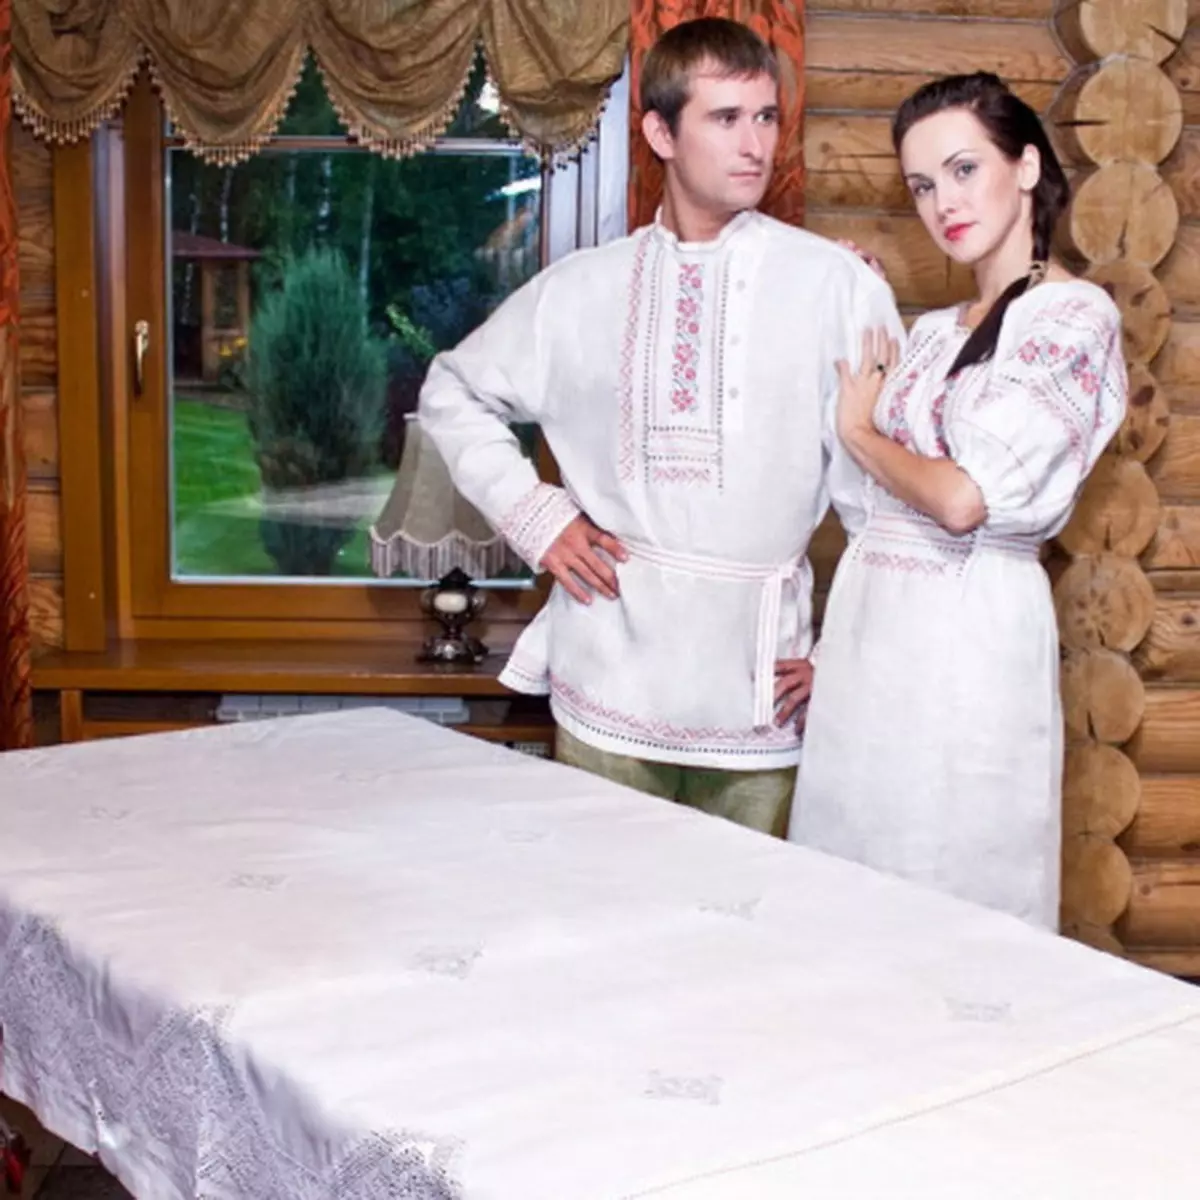 Wedding in style style (73 foto): Registrasi perayaan ing rakyat Rusia lan gaya slavonic lawas, nahan kawinan sing stylized ing musim panas lan mangsa 7844_36